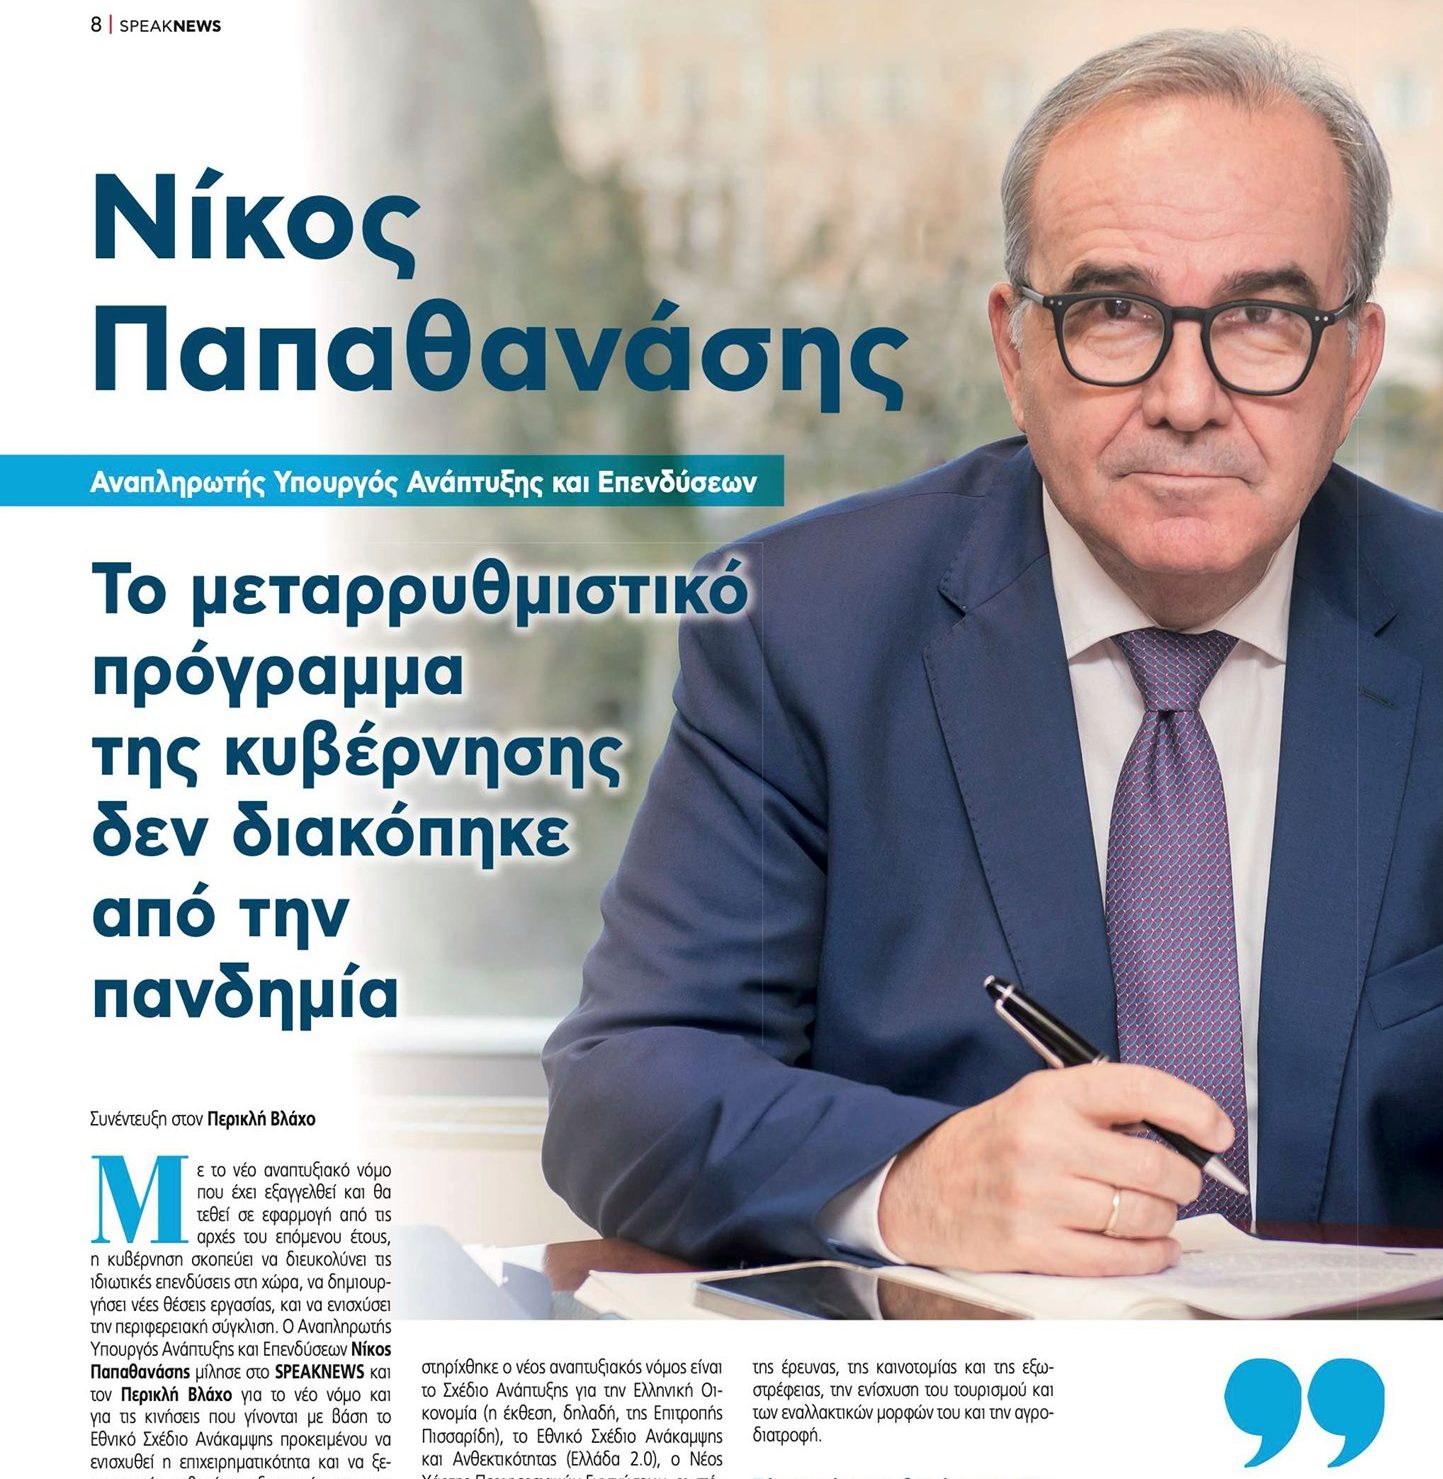 Ο Νίκος Παπαθανάσης, Αναπληρωτής Υπουργός Ανάπτυξης και Επενδύσεων, στο Speaknews